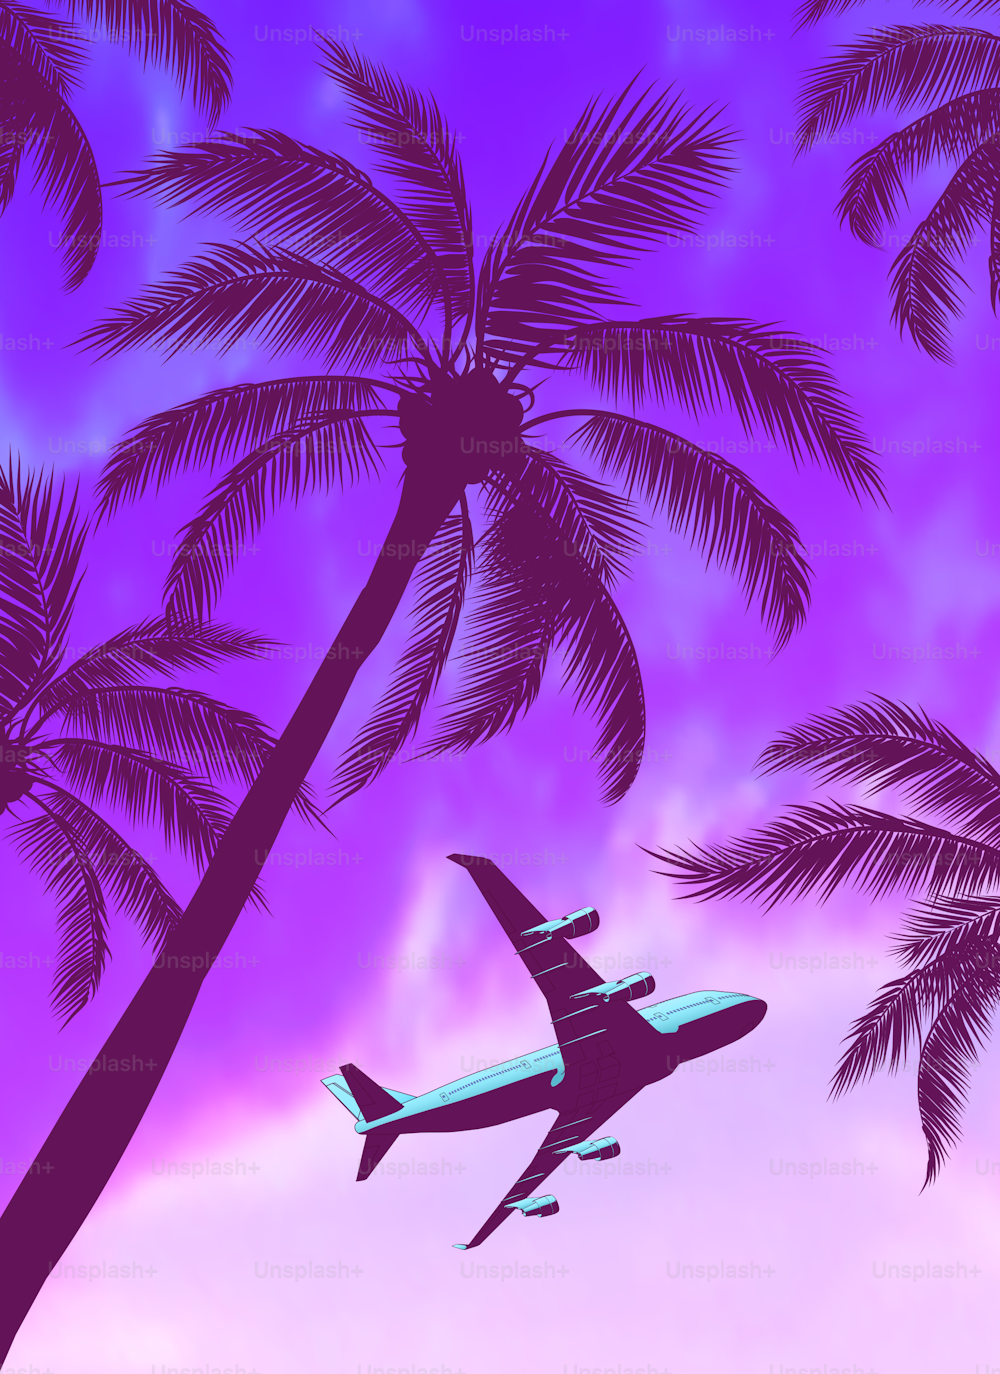 Passagierflugzeug über Palmen mit wunderschönem blau-grün-gelbem Sonnenuntergang. Vektor-Illustration.